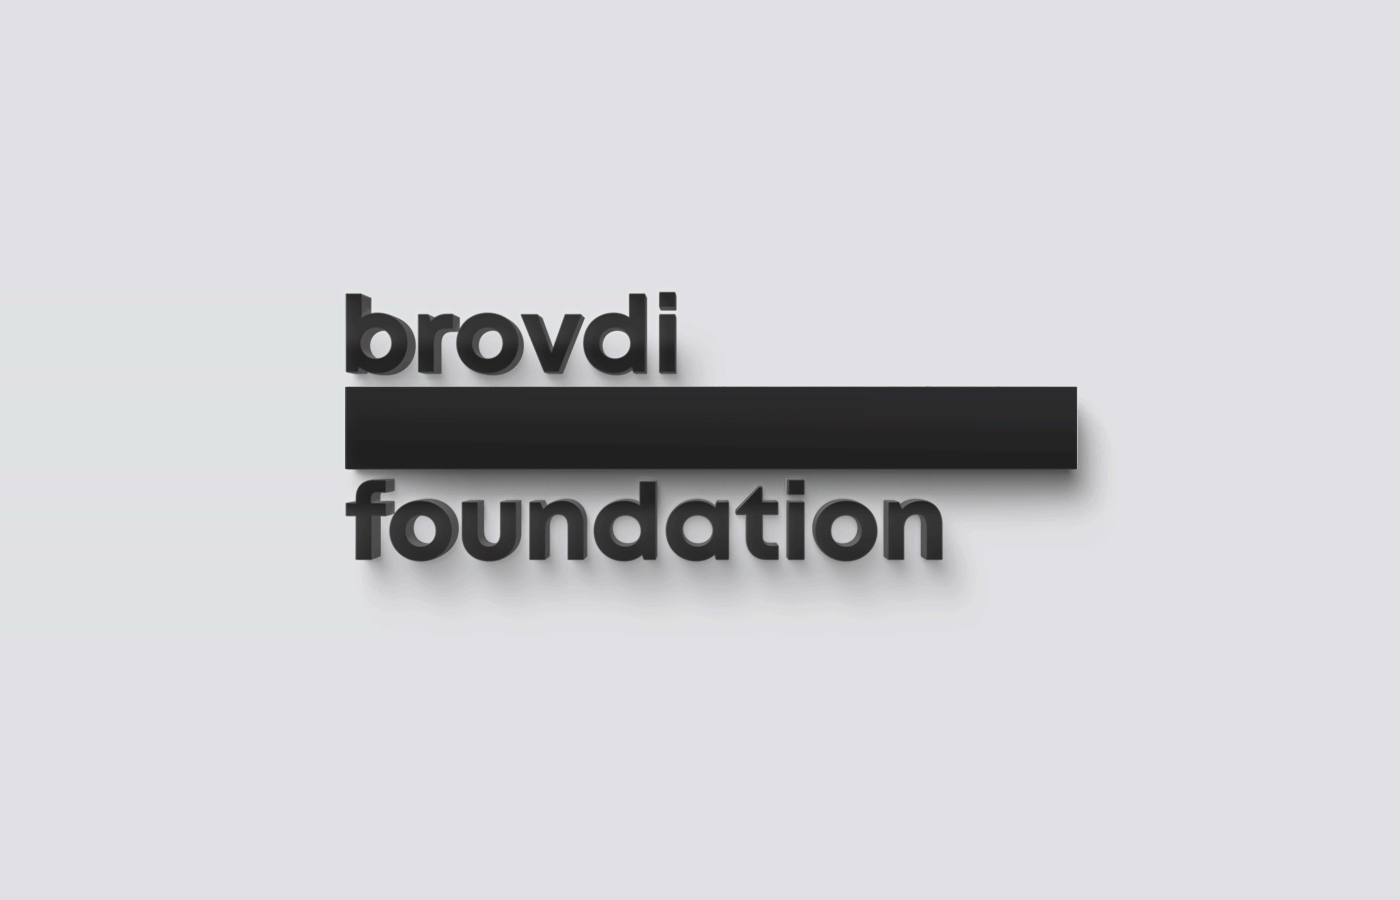 branding  visual identity logo brand graphic design  brovdi brand identity dynamic logo Alevtyna Makovska madein.balck